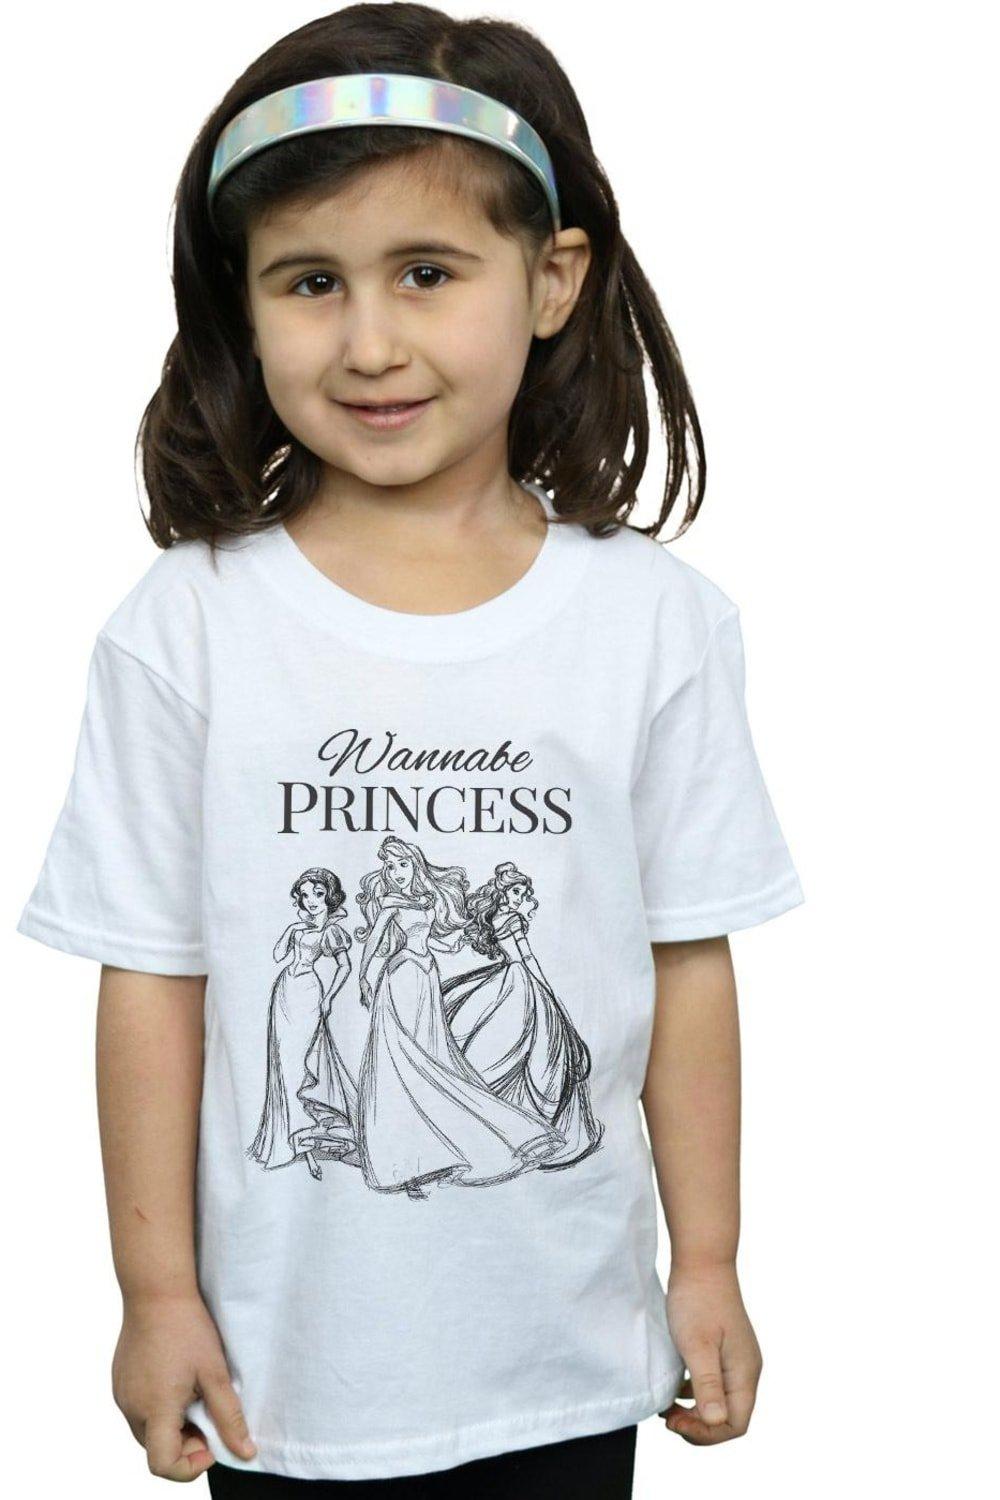 Wannabe Princess Cotton T-Shirt